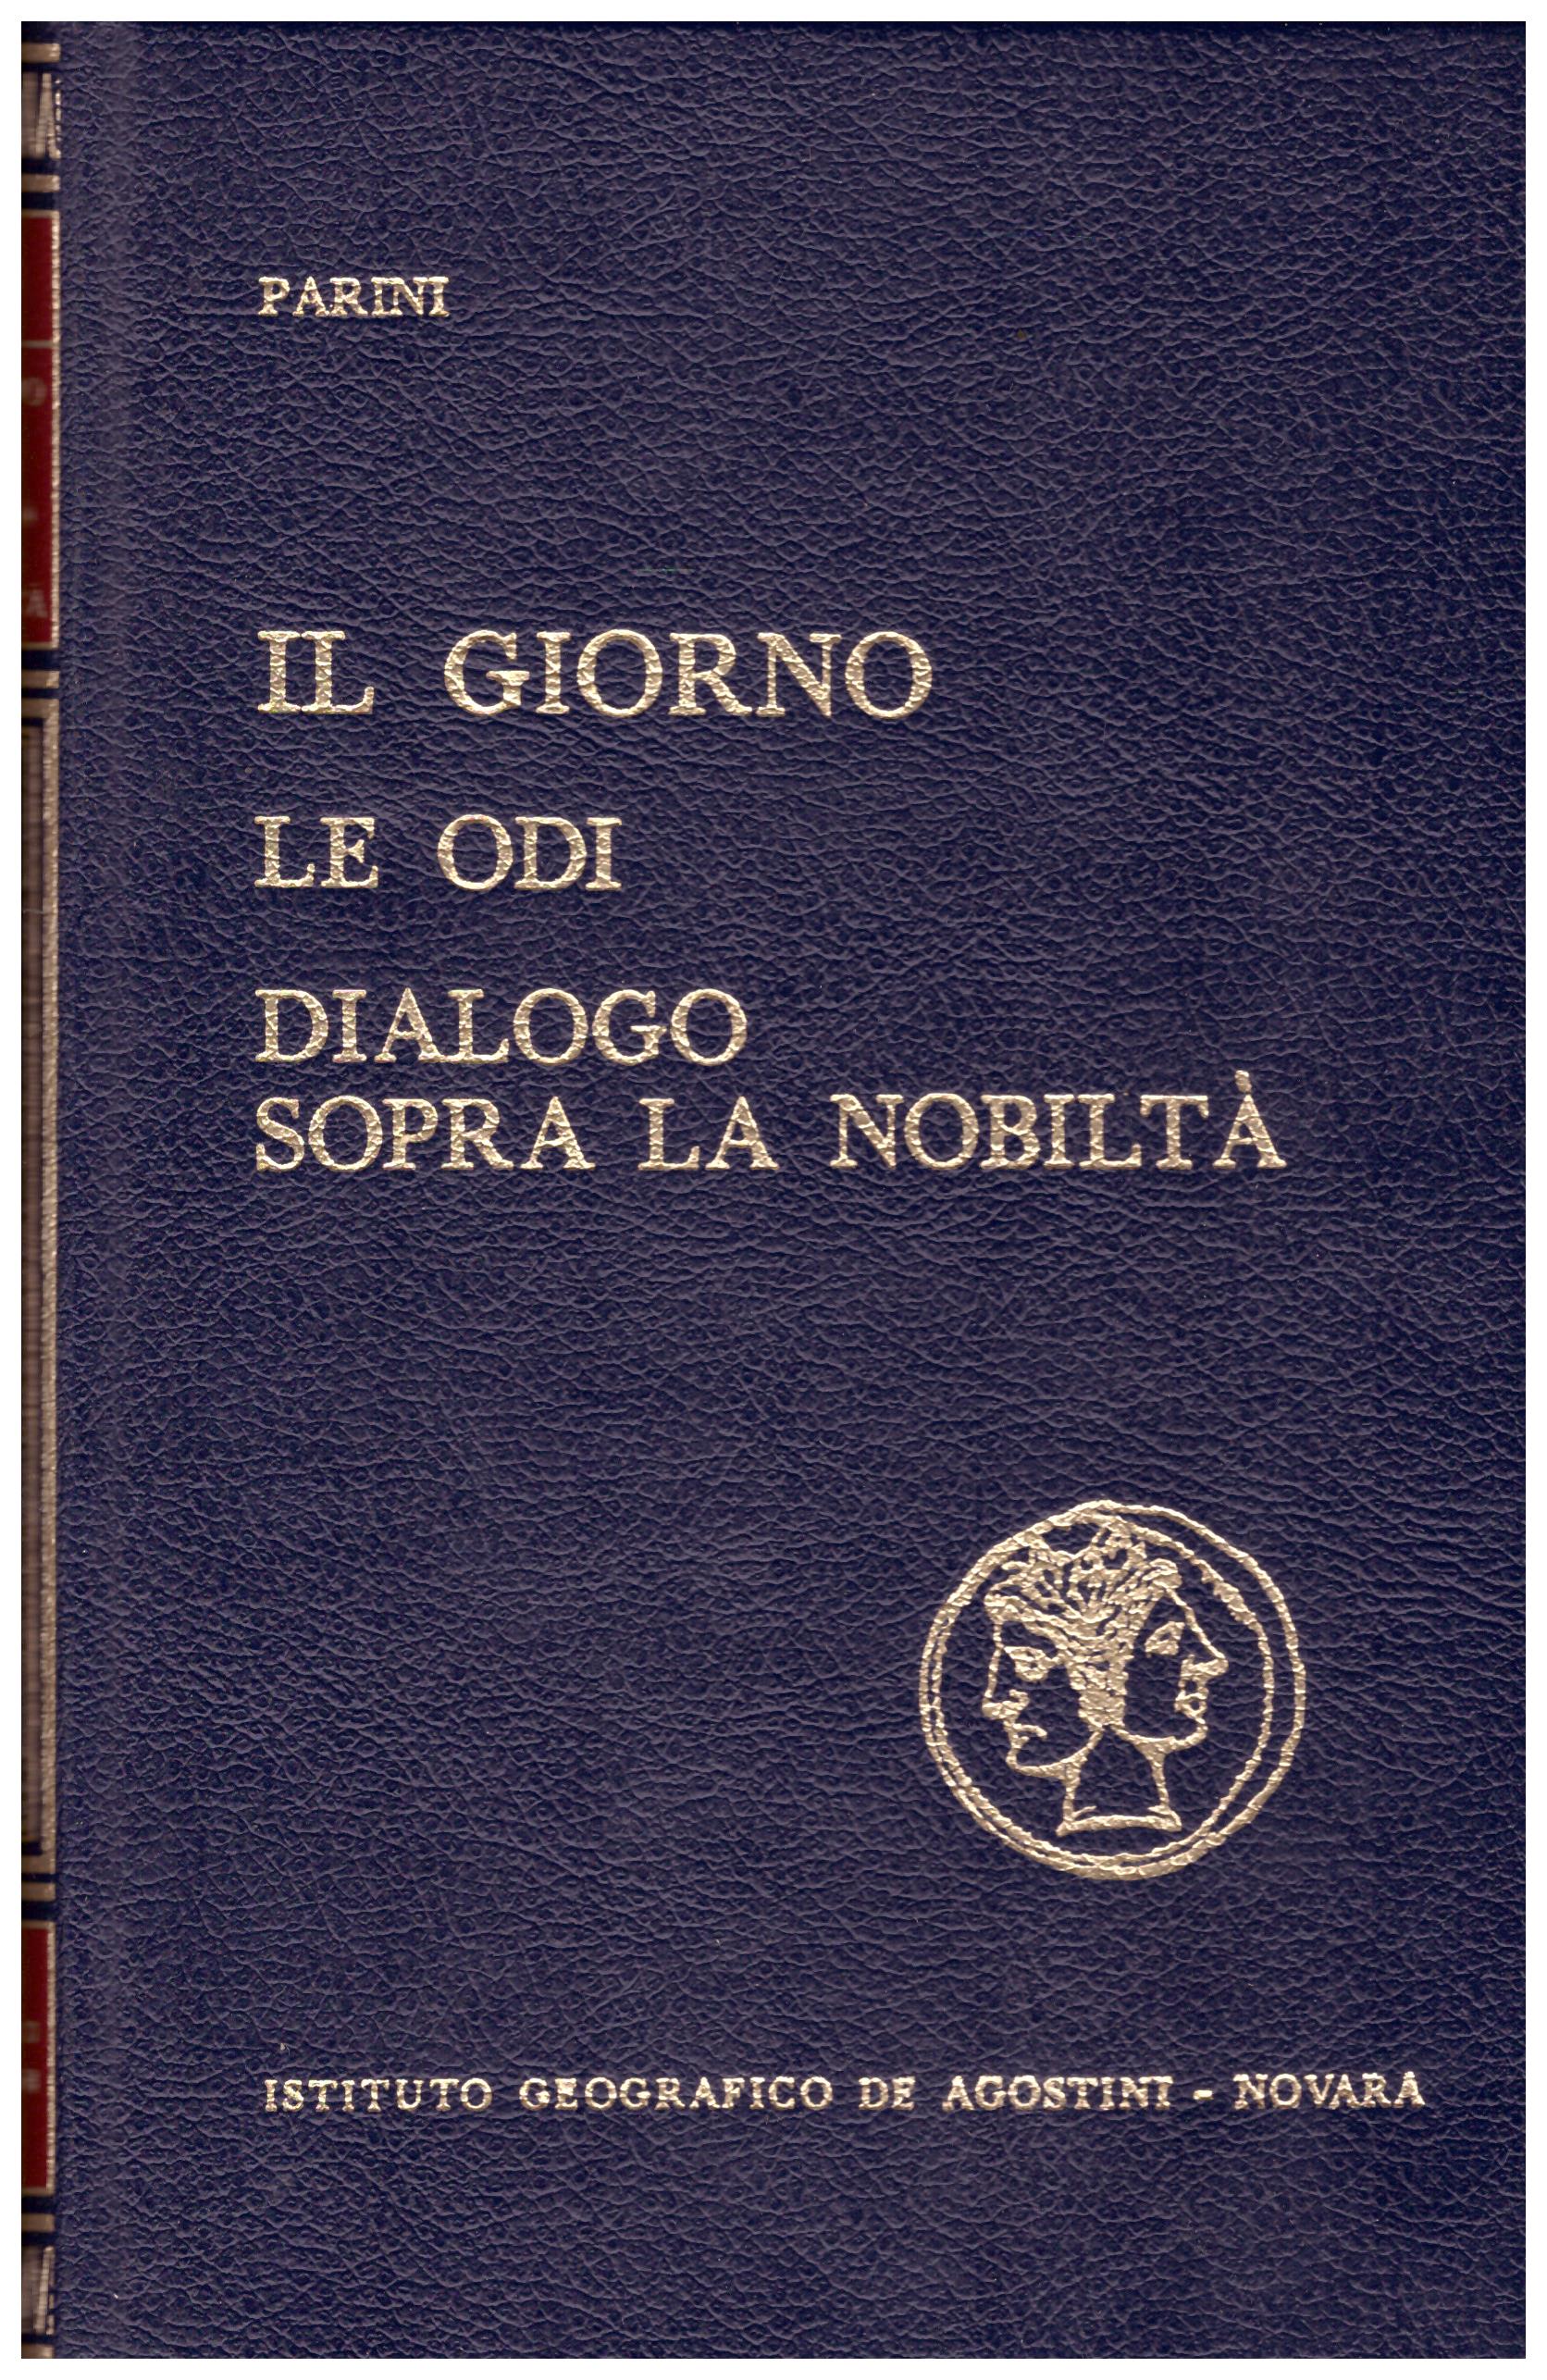 Titolo: Il giorno, le odi, dialogo sopra la nobiltà Autore: Parini   Editore: De Agostini, 1968